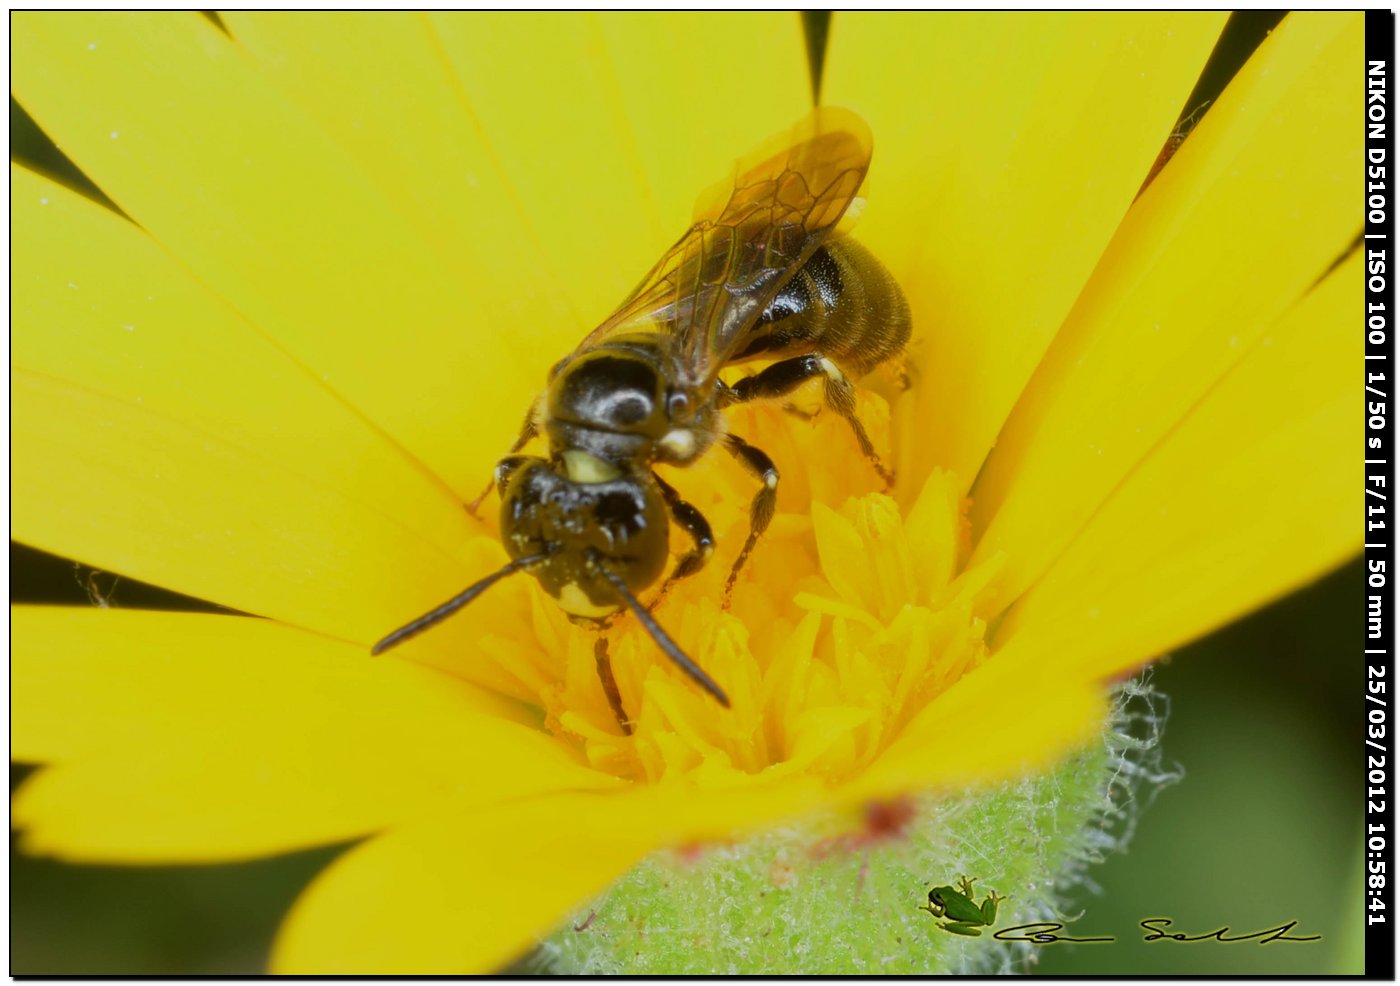 Apina da id.: Ceratina cucurbitina ♂ (Apidae)